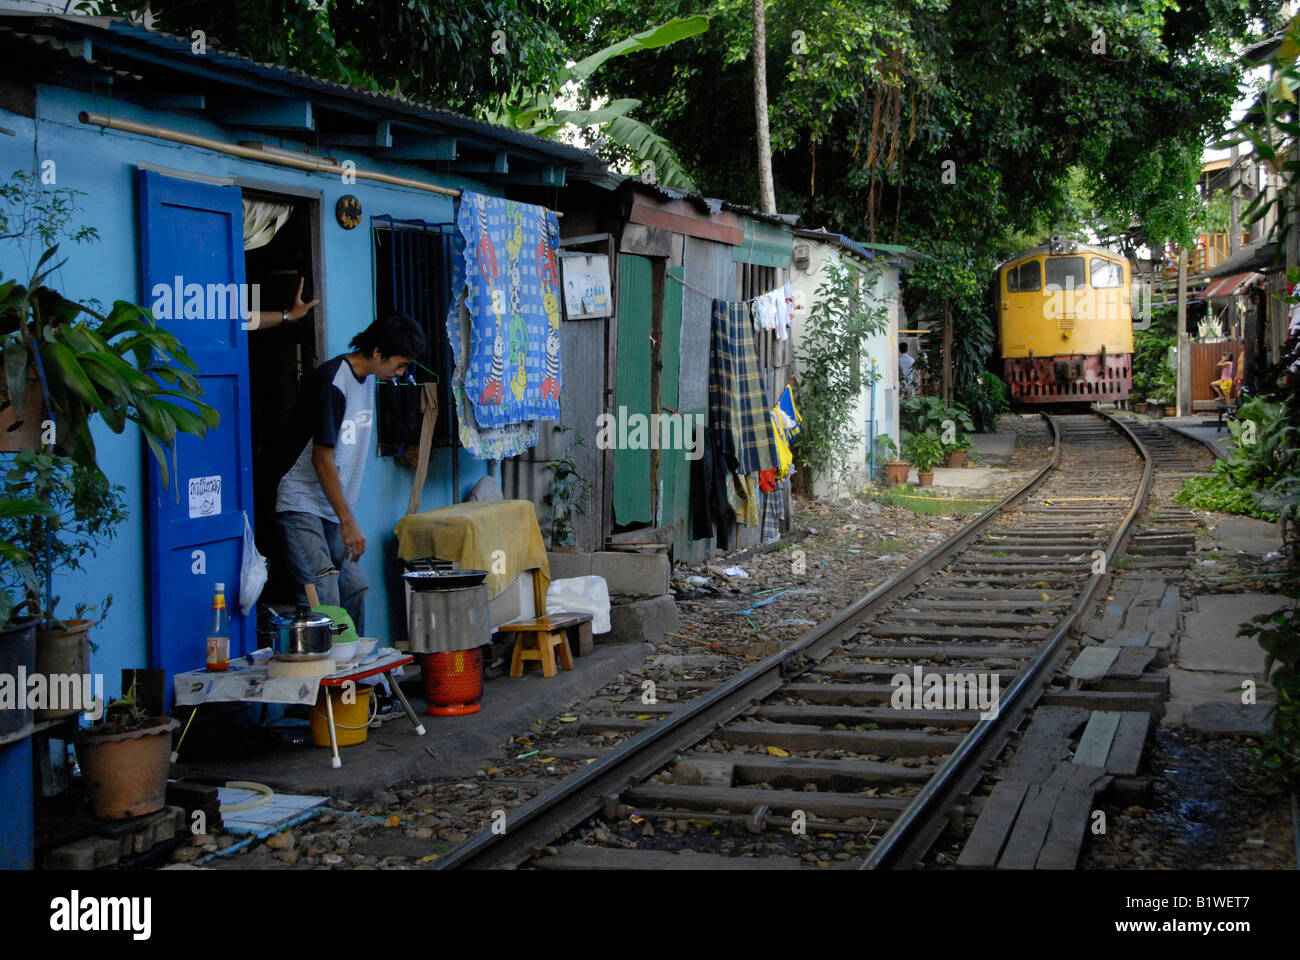 La povertà in Bangkok klong toei , da vivere con la linea ferroviaria Foto Stock